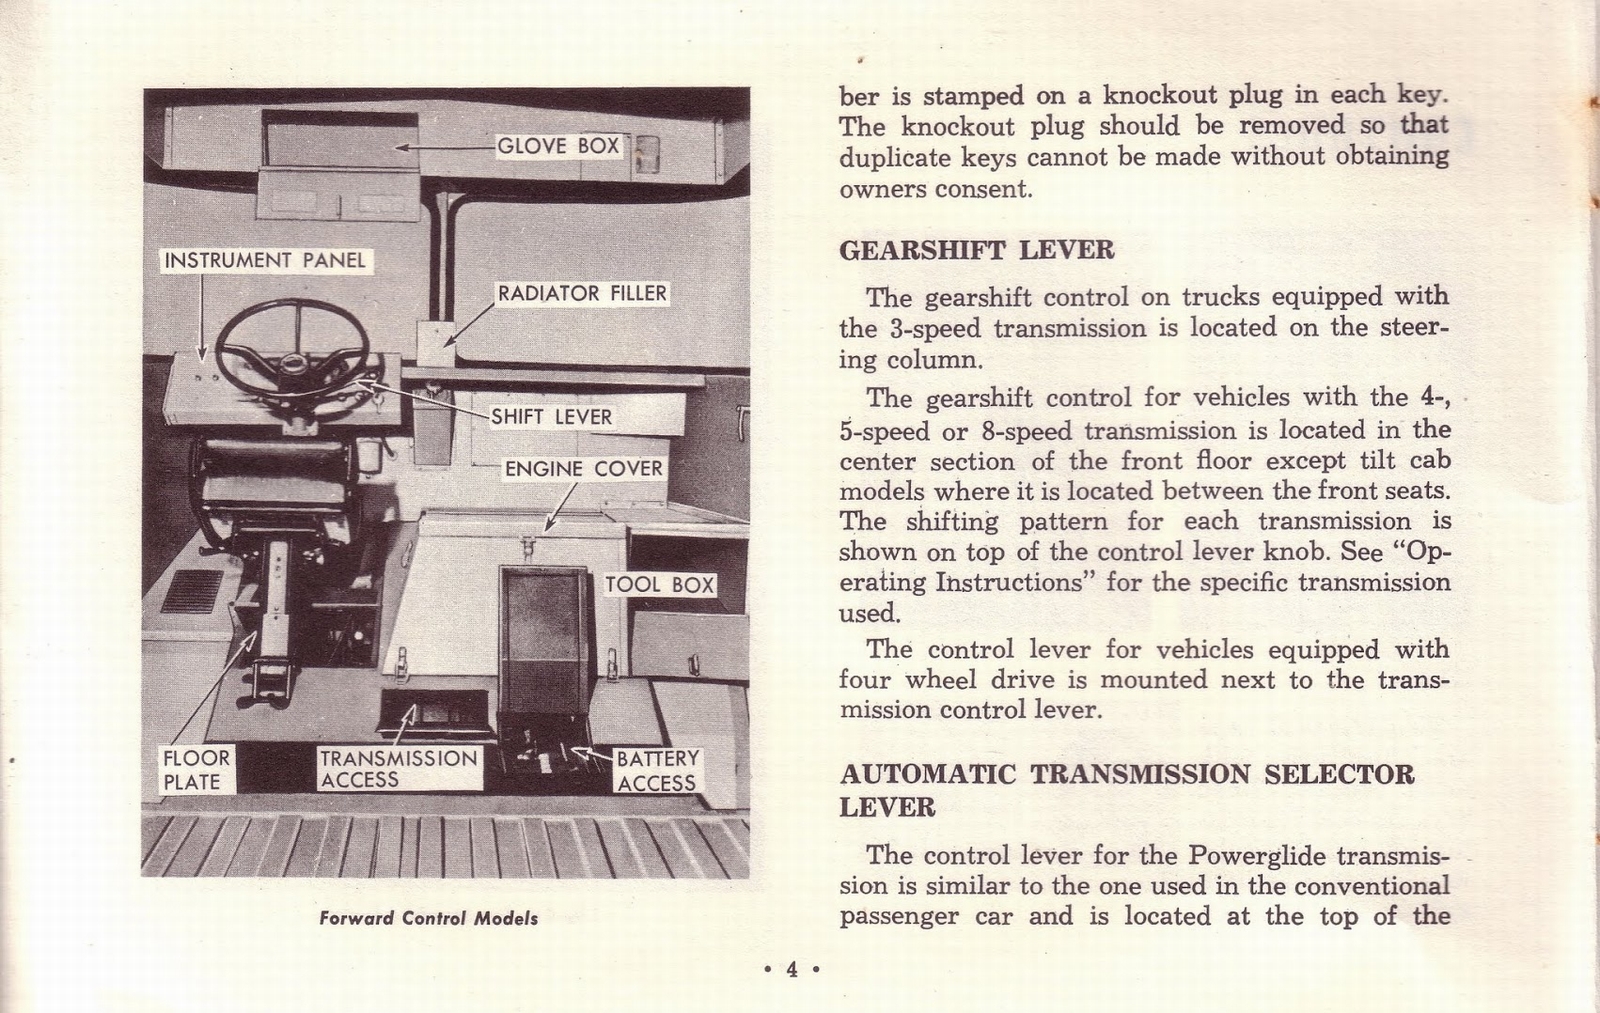 n_1963 Chevrolet Truck Owners Guide-04.jpg